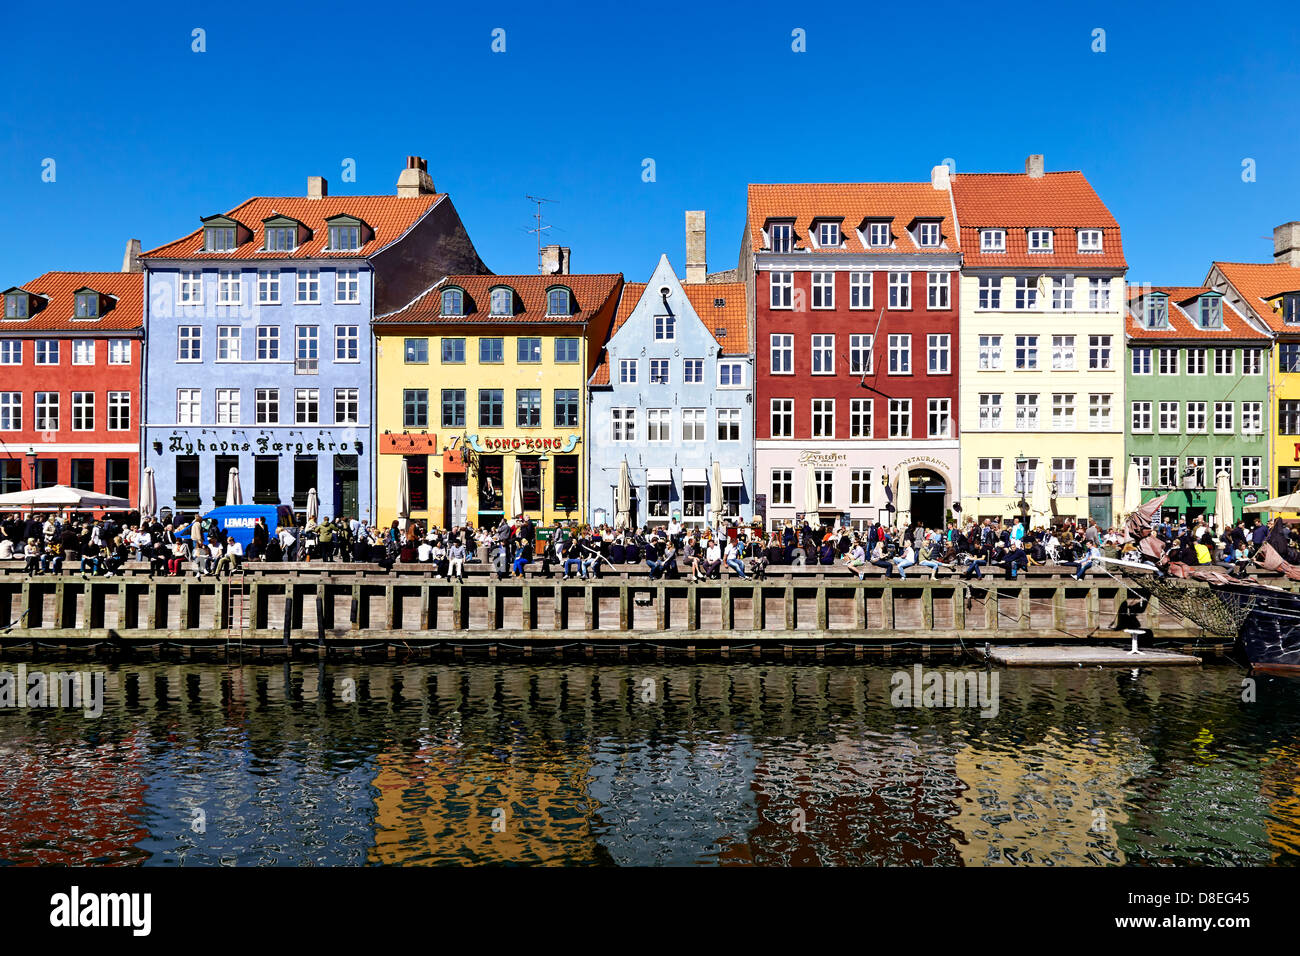 Nyhavn, un canal central y el puerto de Copenhague, está bordeada por siglos XVII y comienzos del siglo XVIII, casas y restaurantes. El canal es de 400 metros de largo y cuenta con muchos históricos barcos de madera. Foto de stock